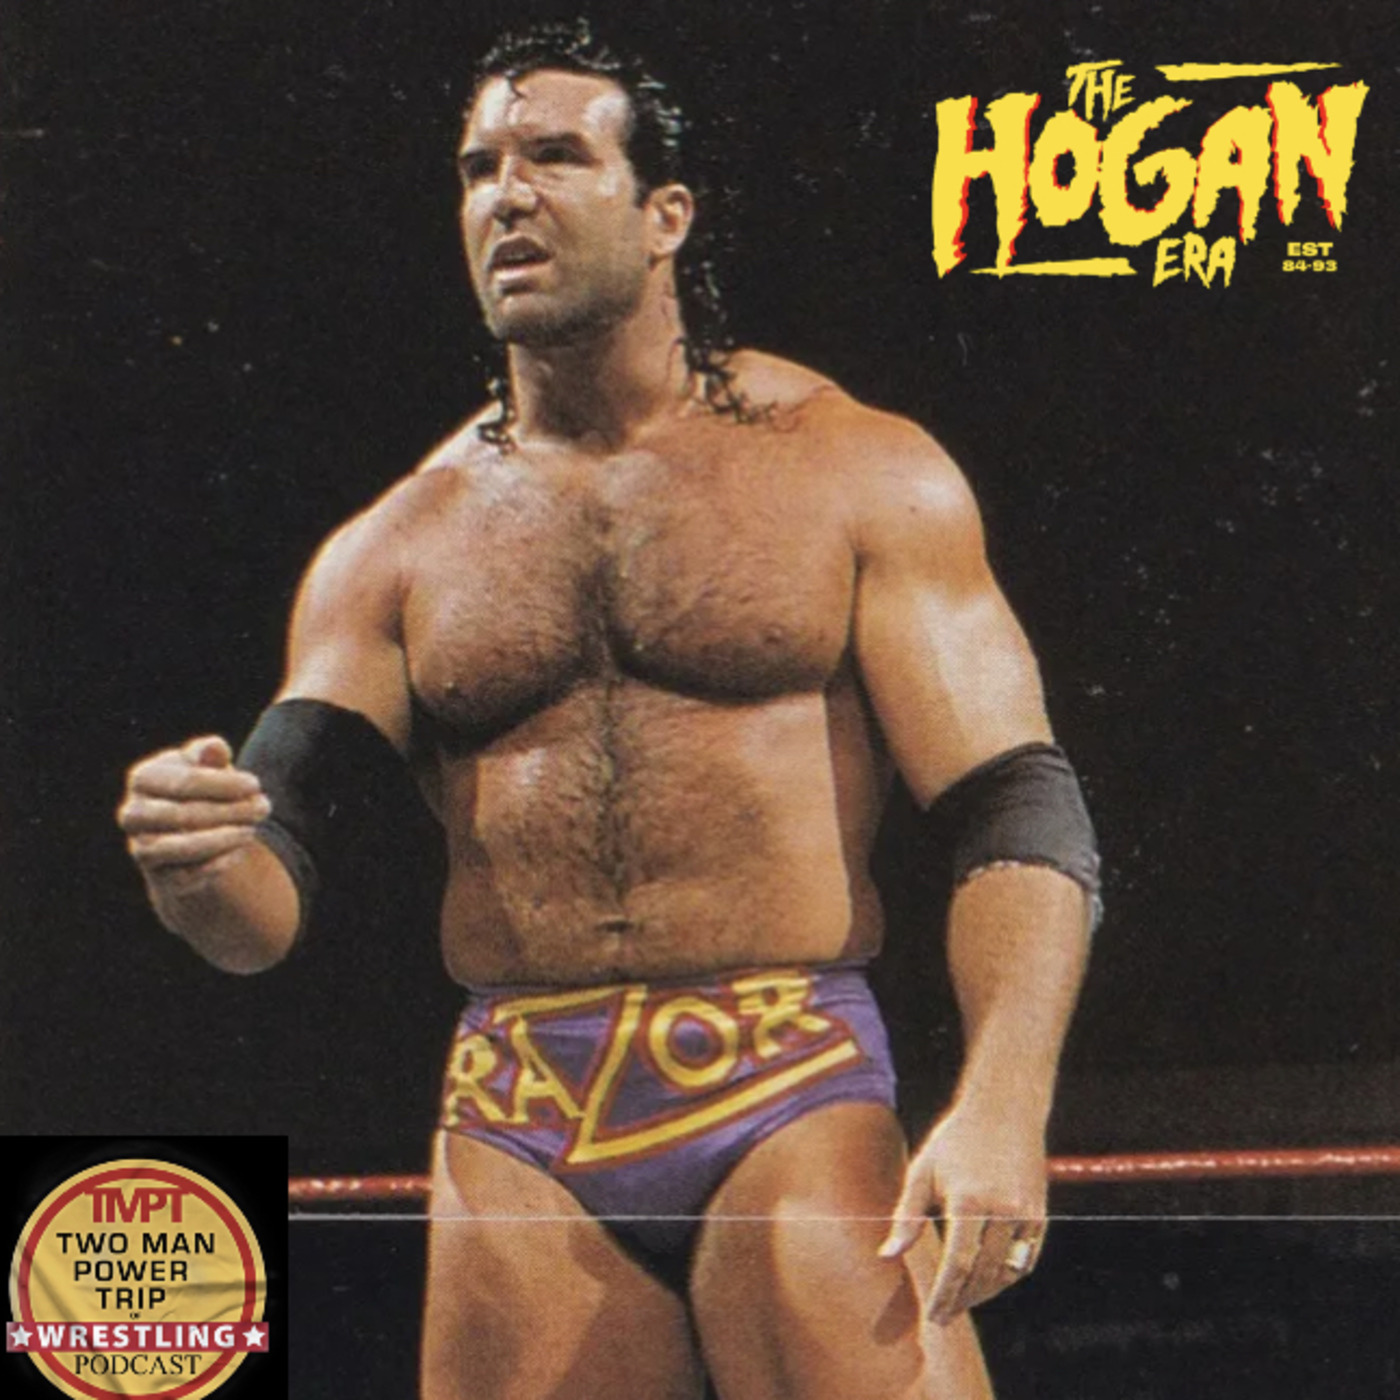 Episode 122: The Hogan Era - Razor Ramon